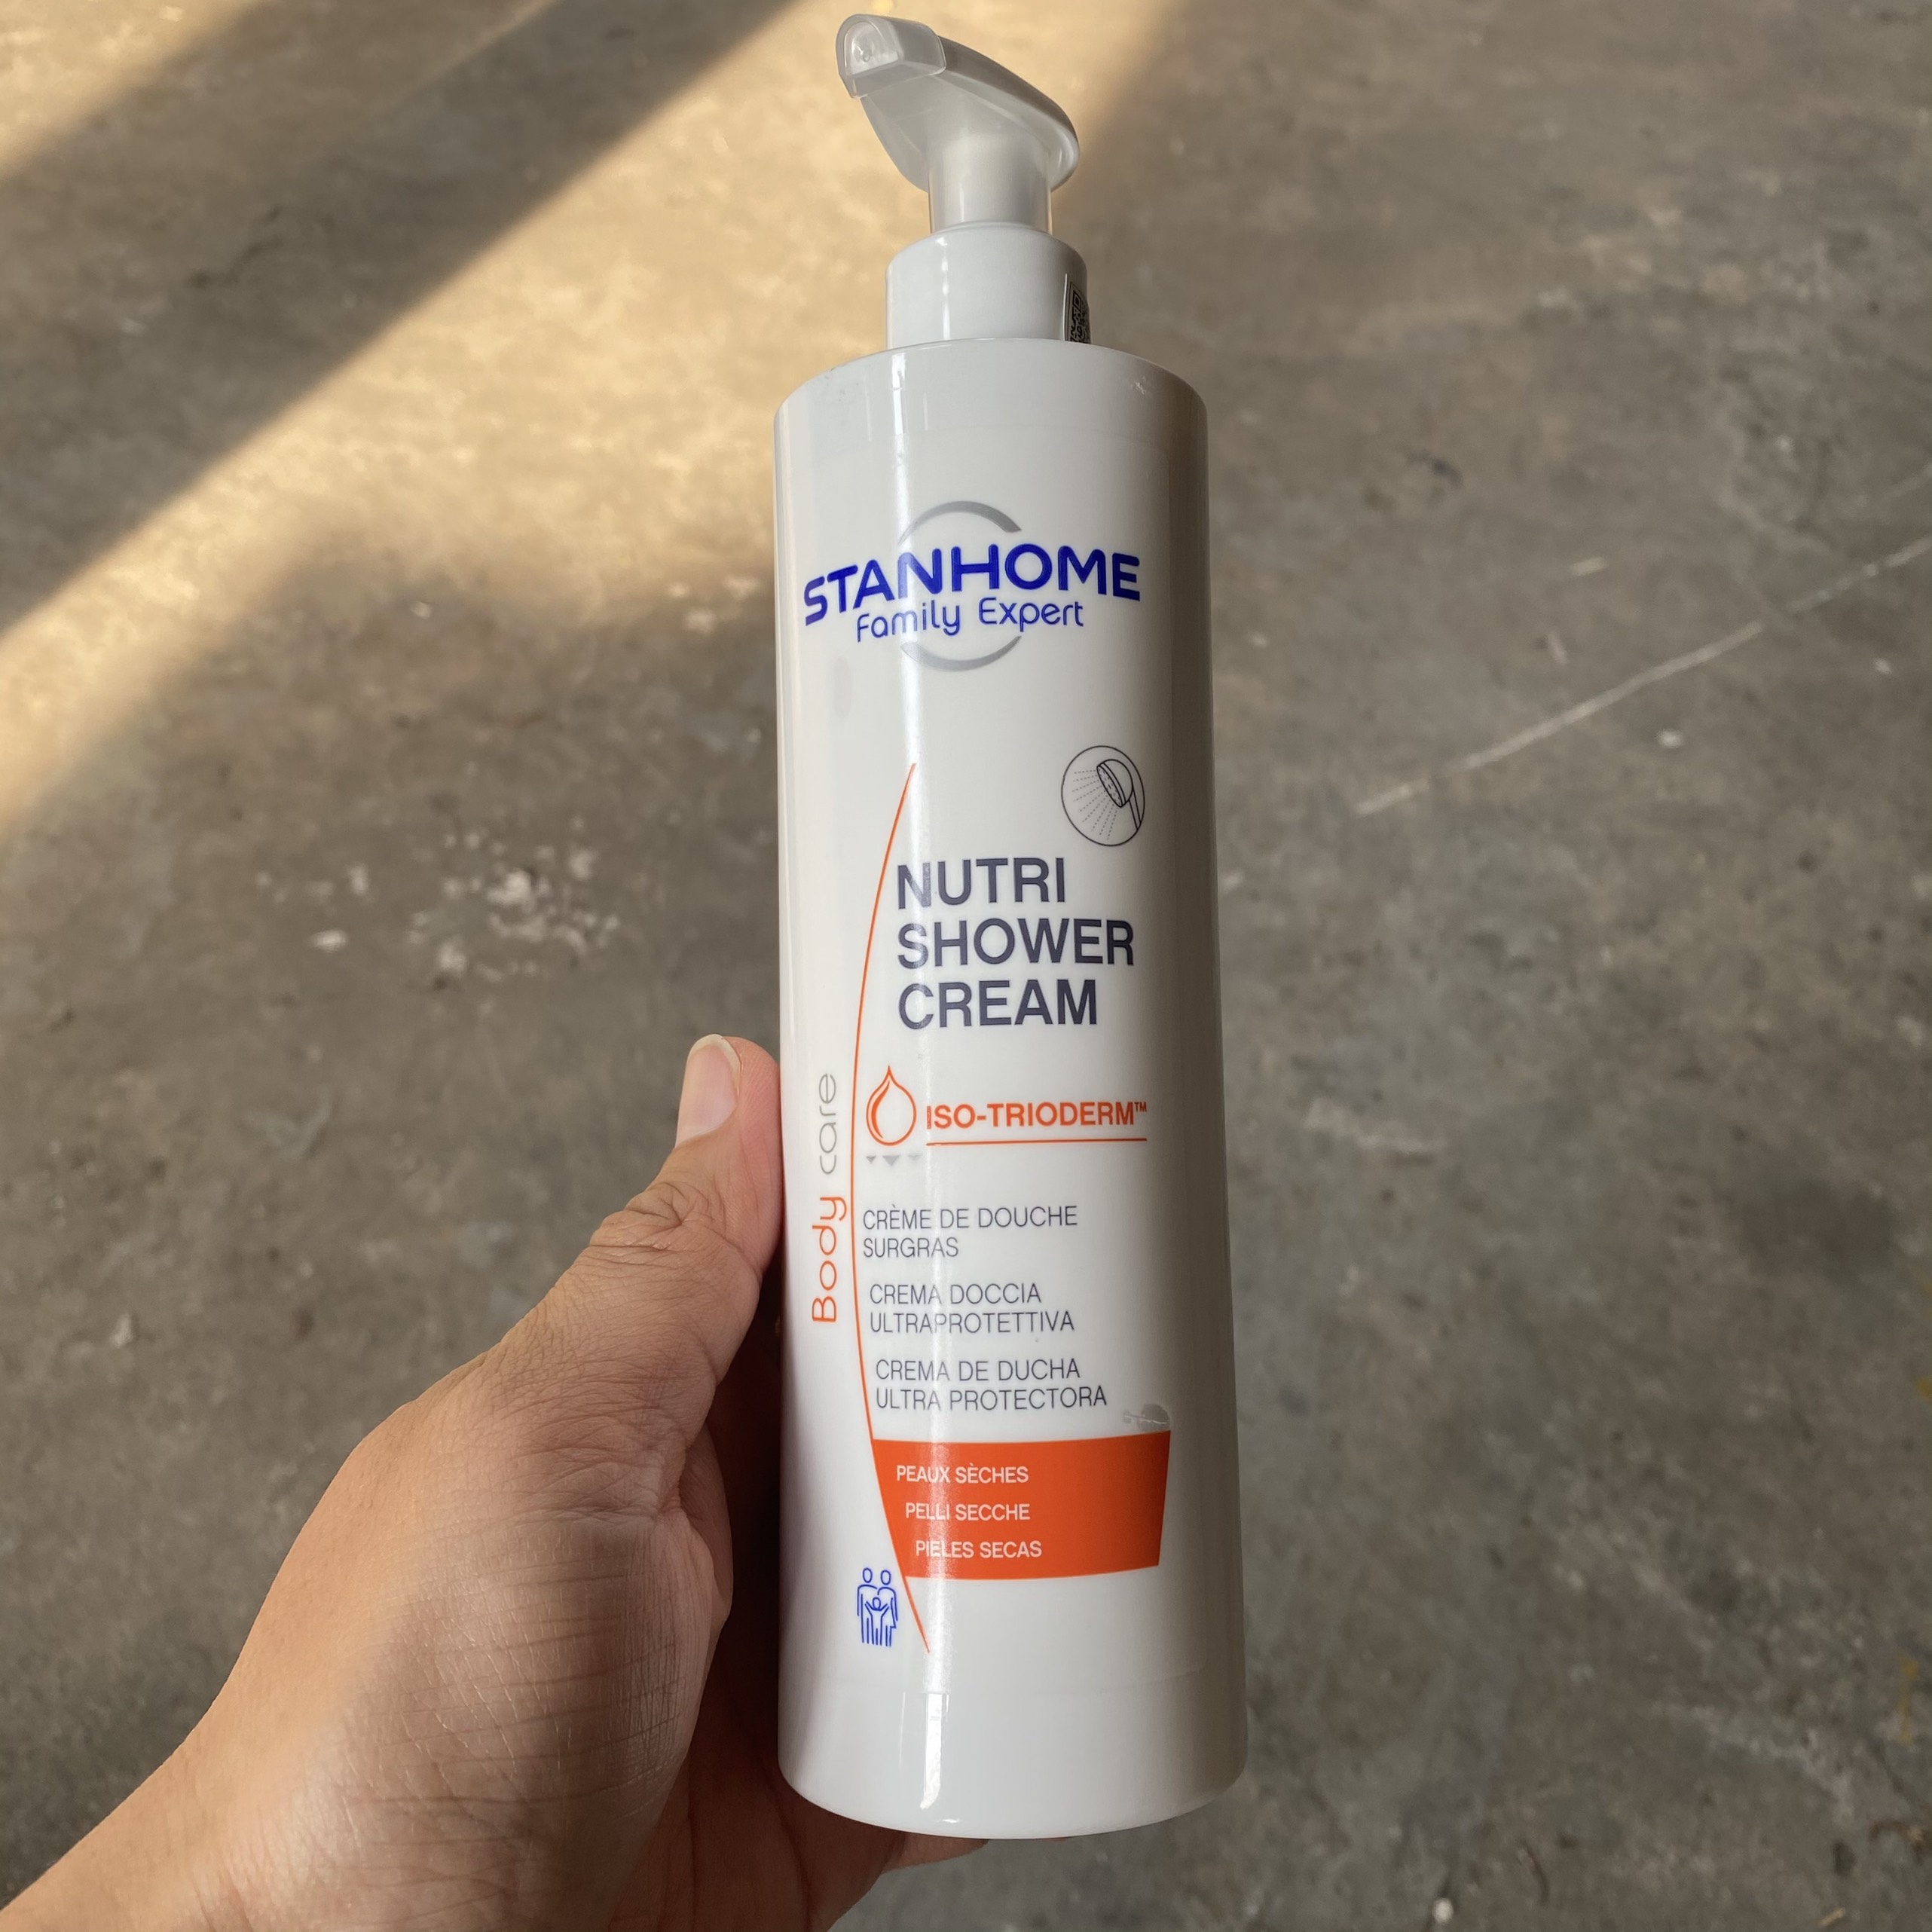 Sữa tắm STANHOME FAMILY EXPERT Nutri Shower Cream 390ml - dành cho da khô, nhạy cảm, kích ứng